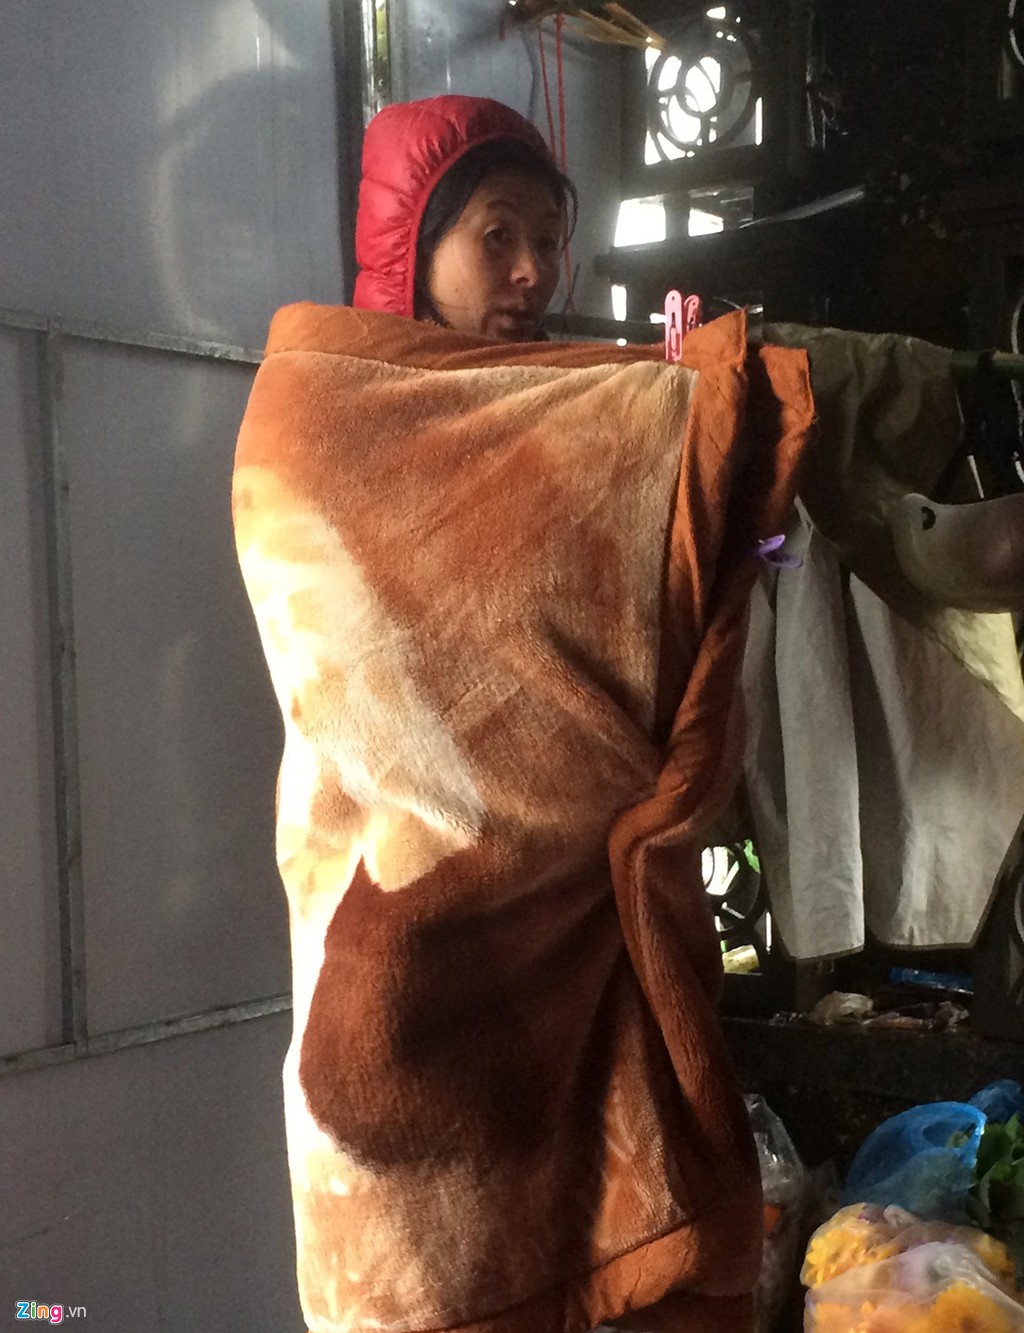 Hình ảnh người dân co ro tìm cách chống giá lạnh xuất hiện ở khắp nơi trong khu vực thị trấn Sapa và các bản làng quanh vùng. Trong ảnh, một phụ nữ quàng chăn len khi rảnh tay. Chị cho biết, ngồi xuống rất lạnh, phải đứng mới đỡ rét run.